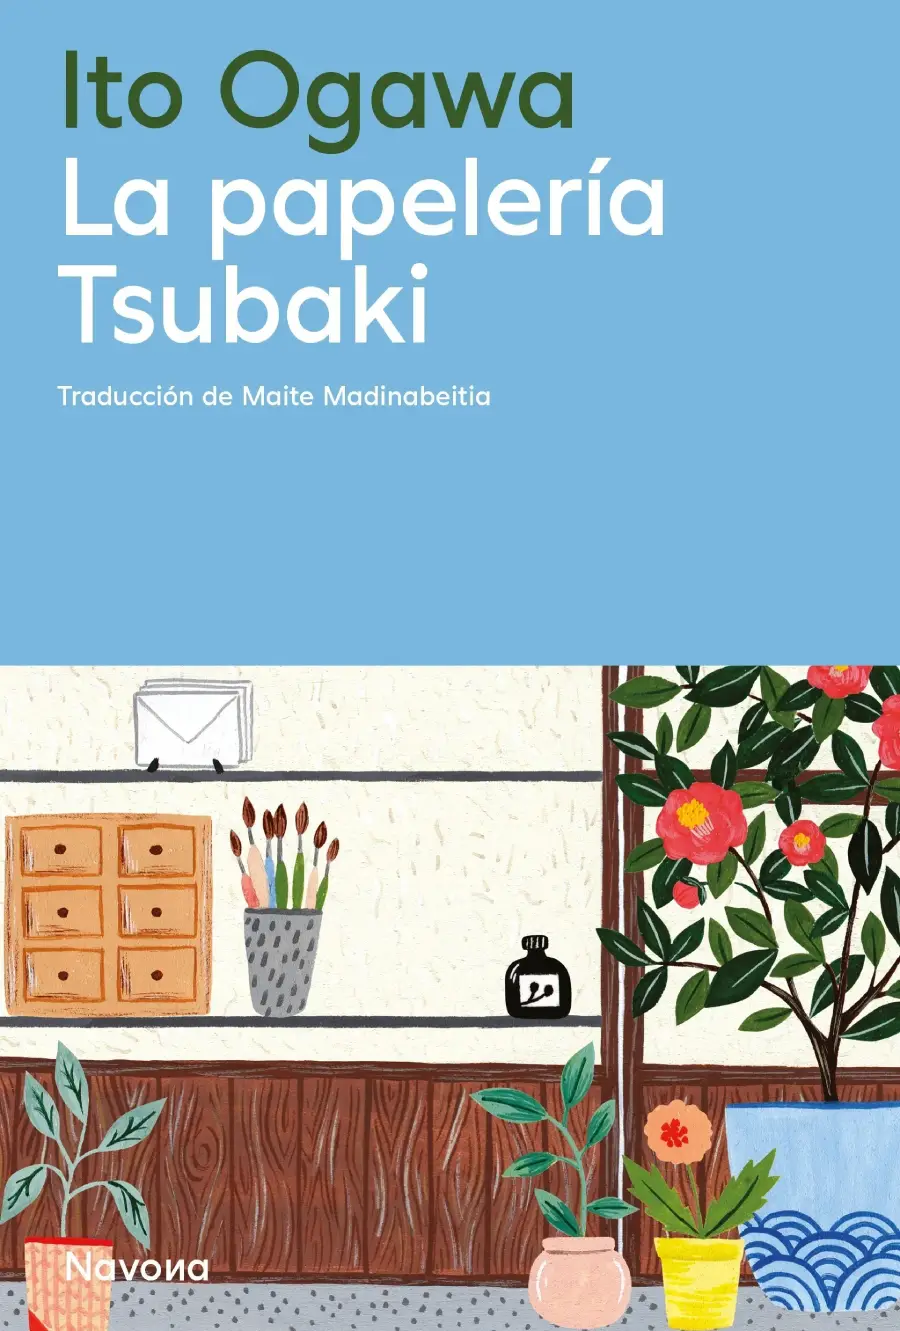 La papelería Tsubaki es una novela japonesa que acaba de ser traducida al español y editada por Navona.